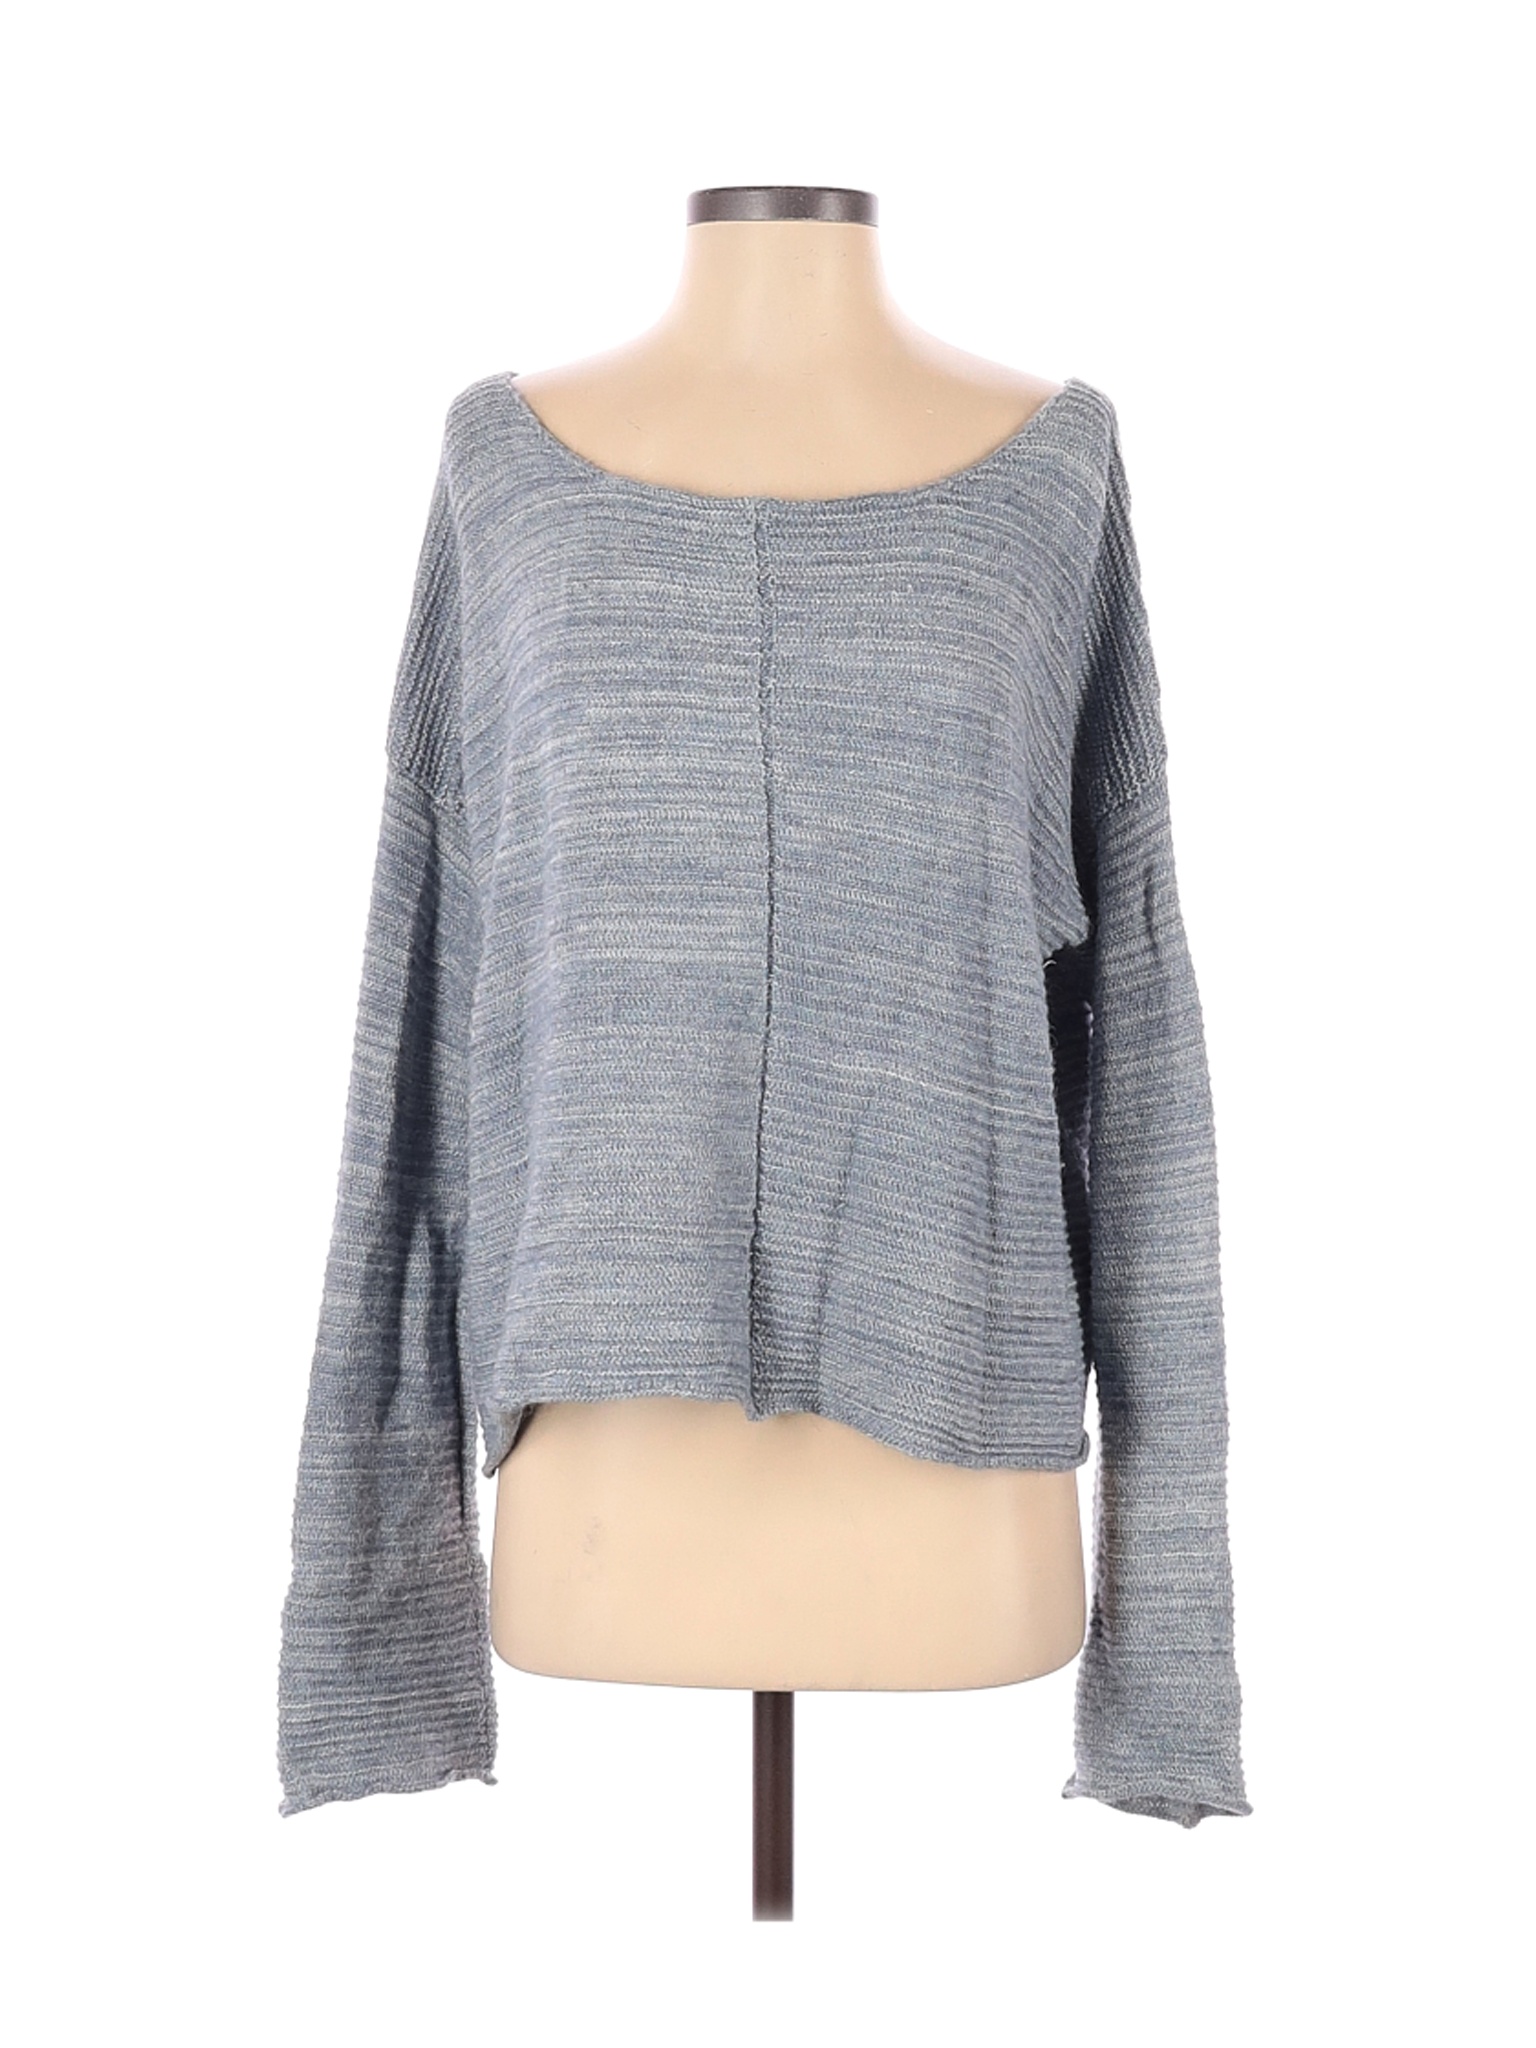 Free People Women Gray Wool Pullover Sweater S | eBay